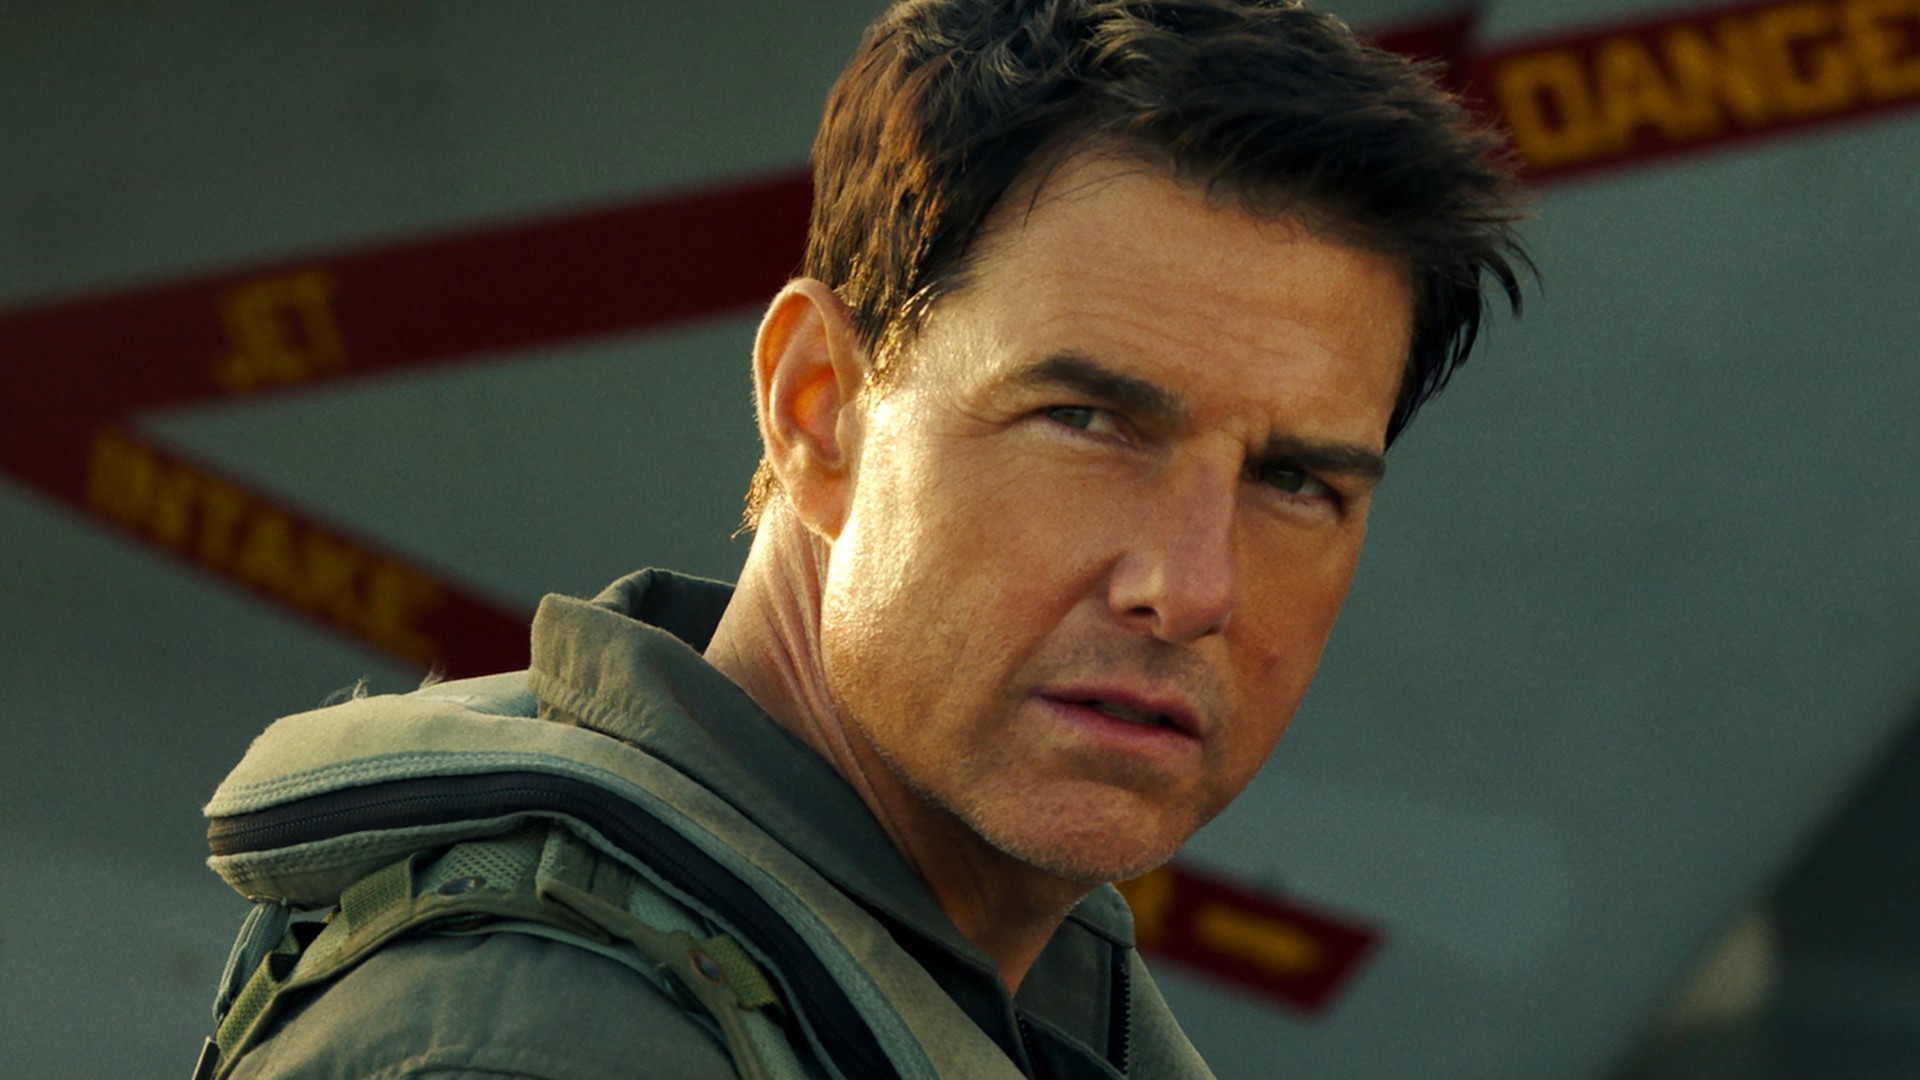 Tom Cruise en Top Gun Maverick